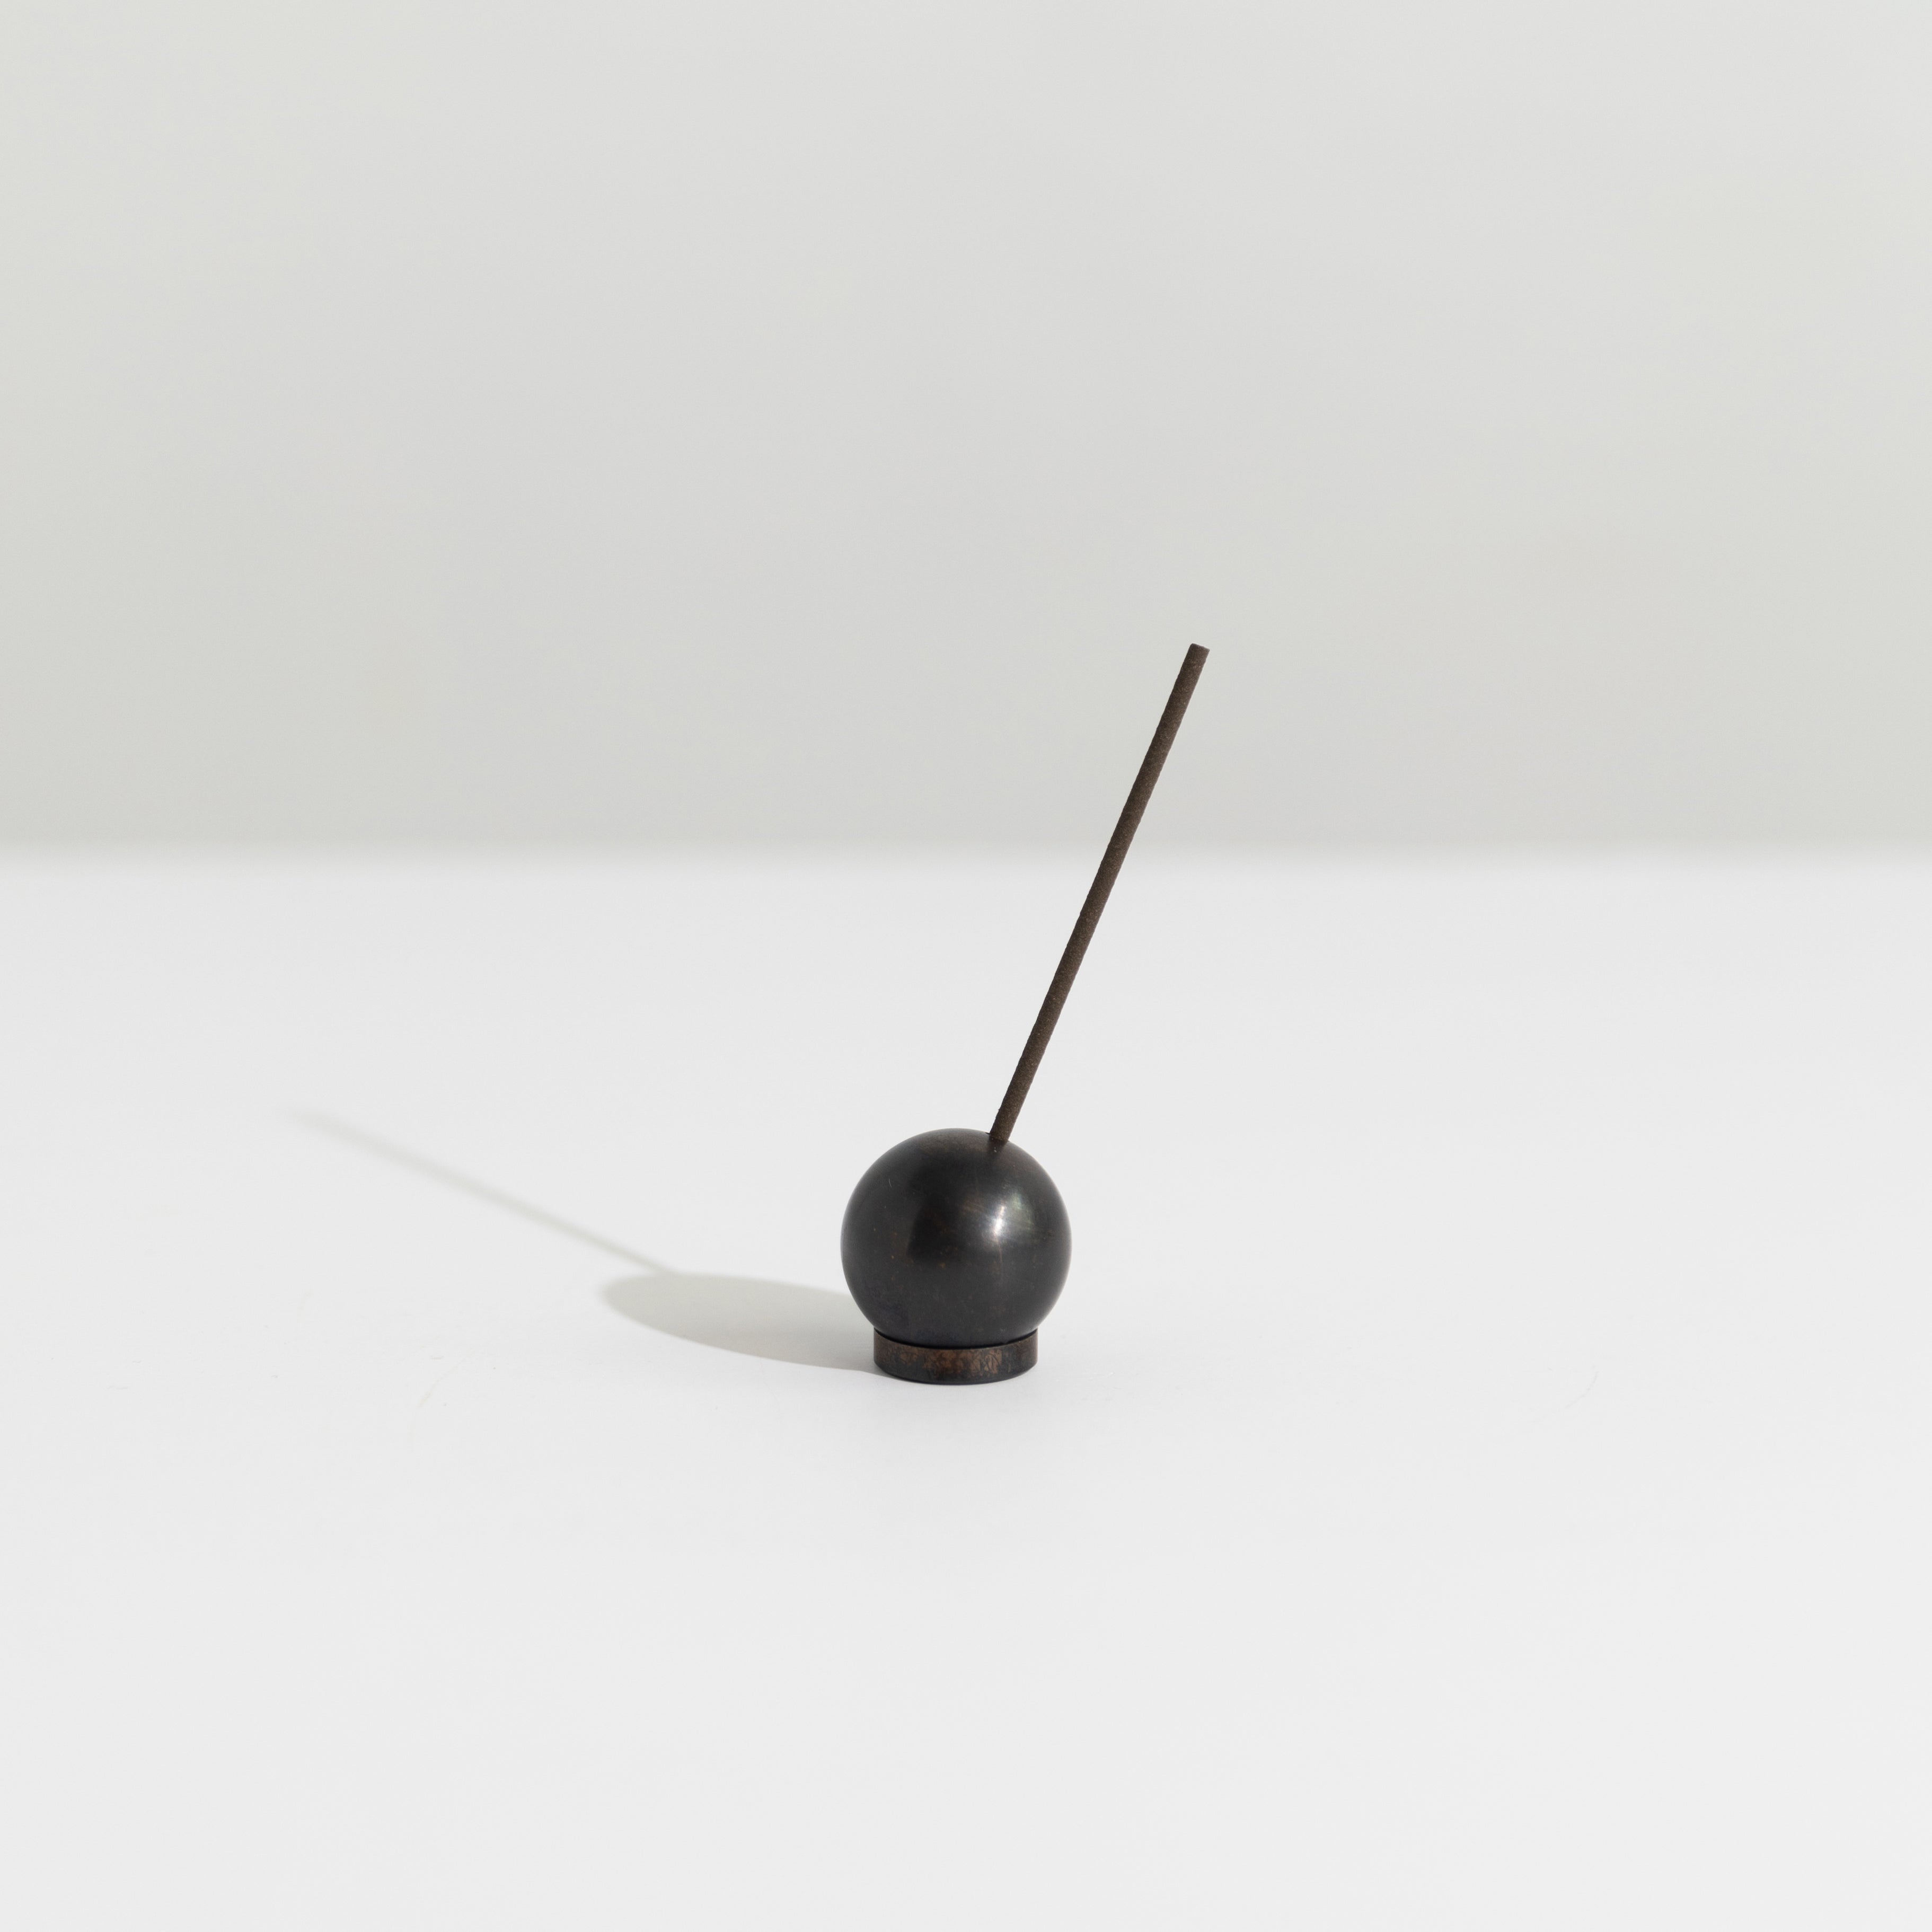 Large Sphere Incense Holder in black